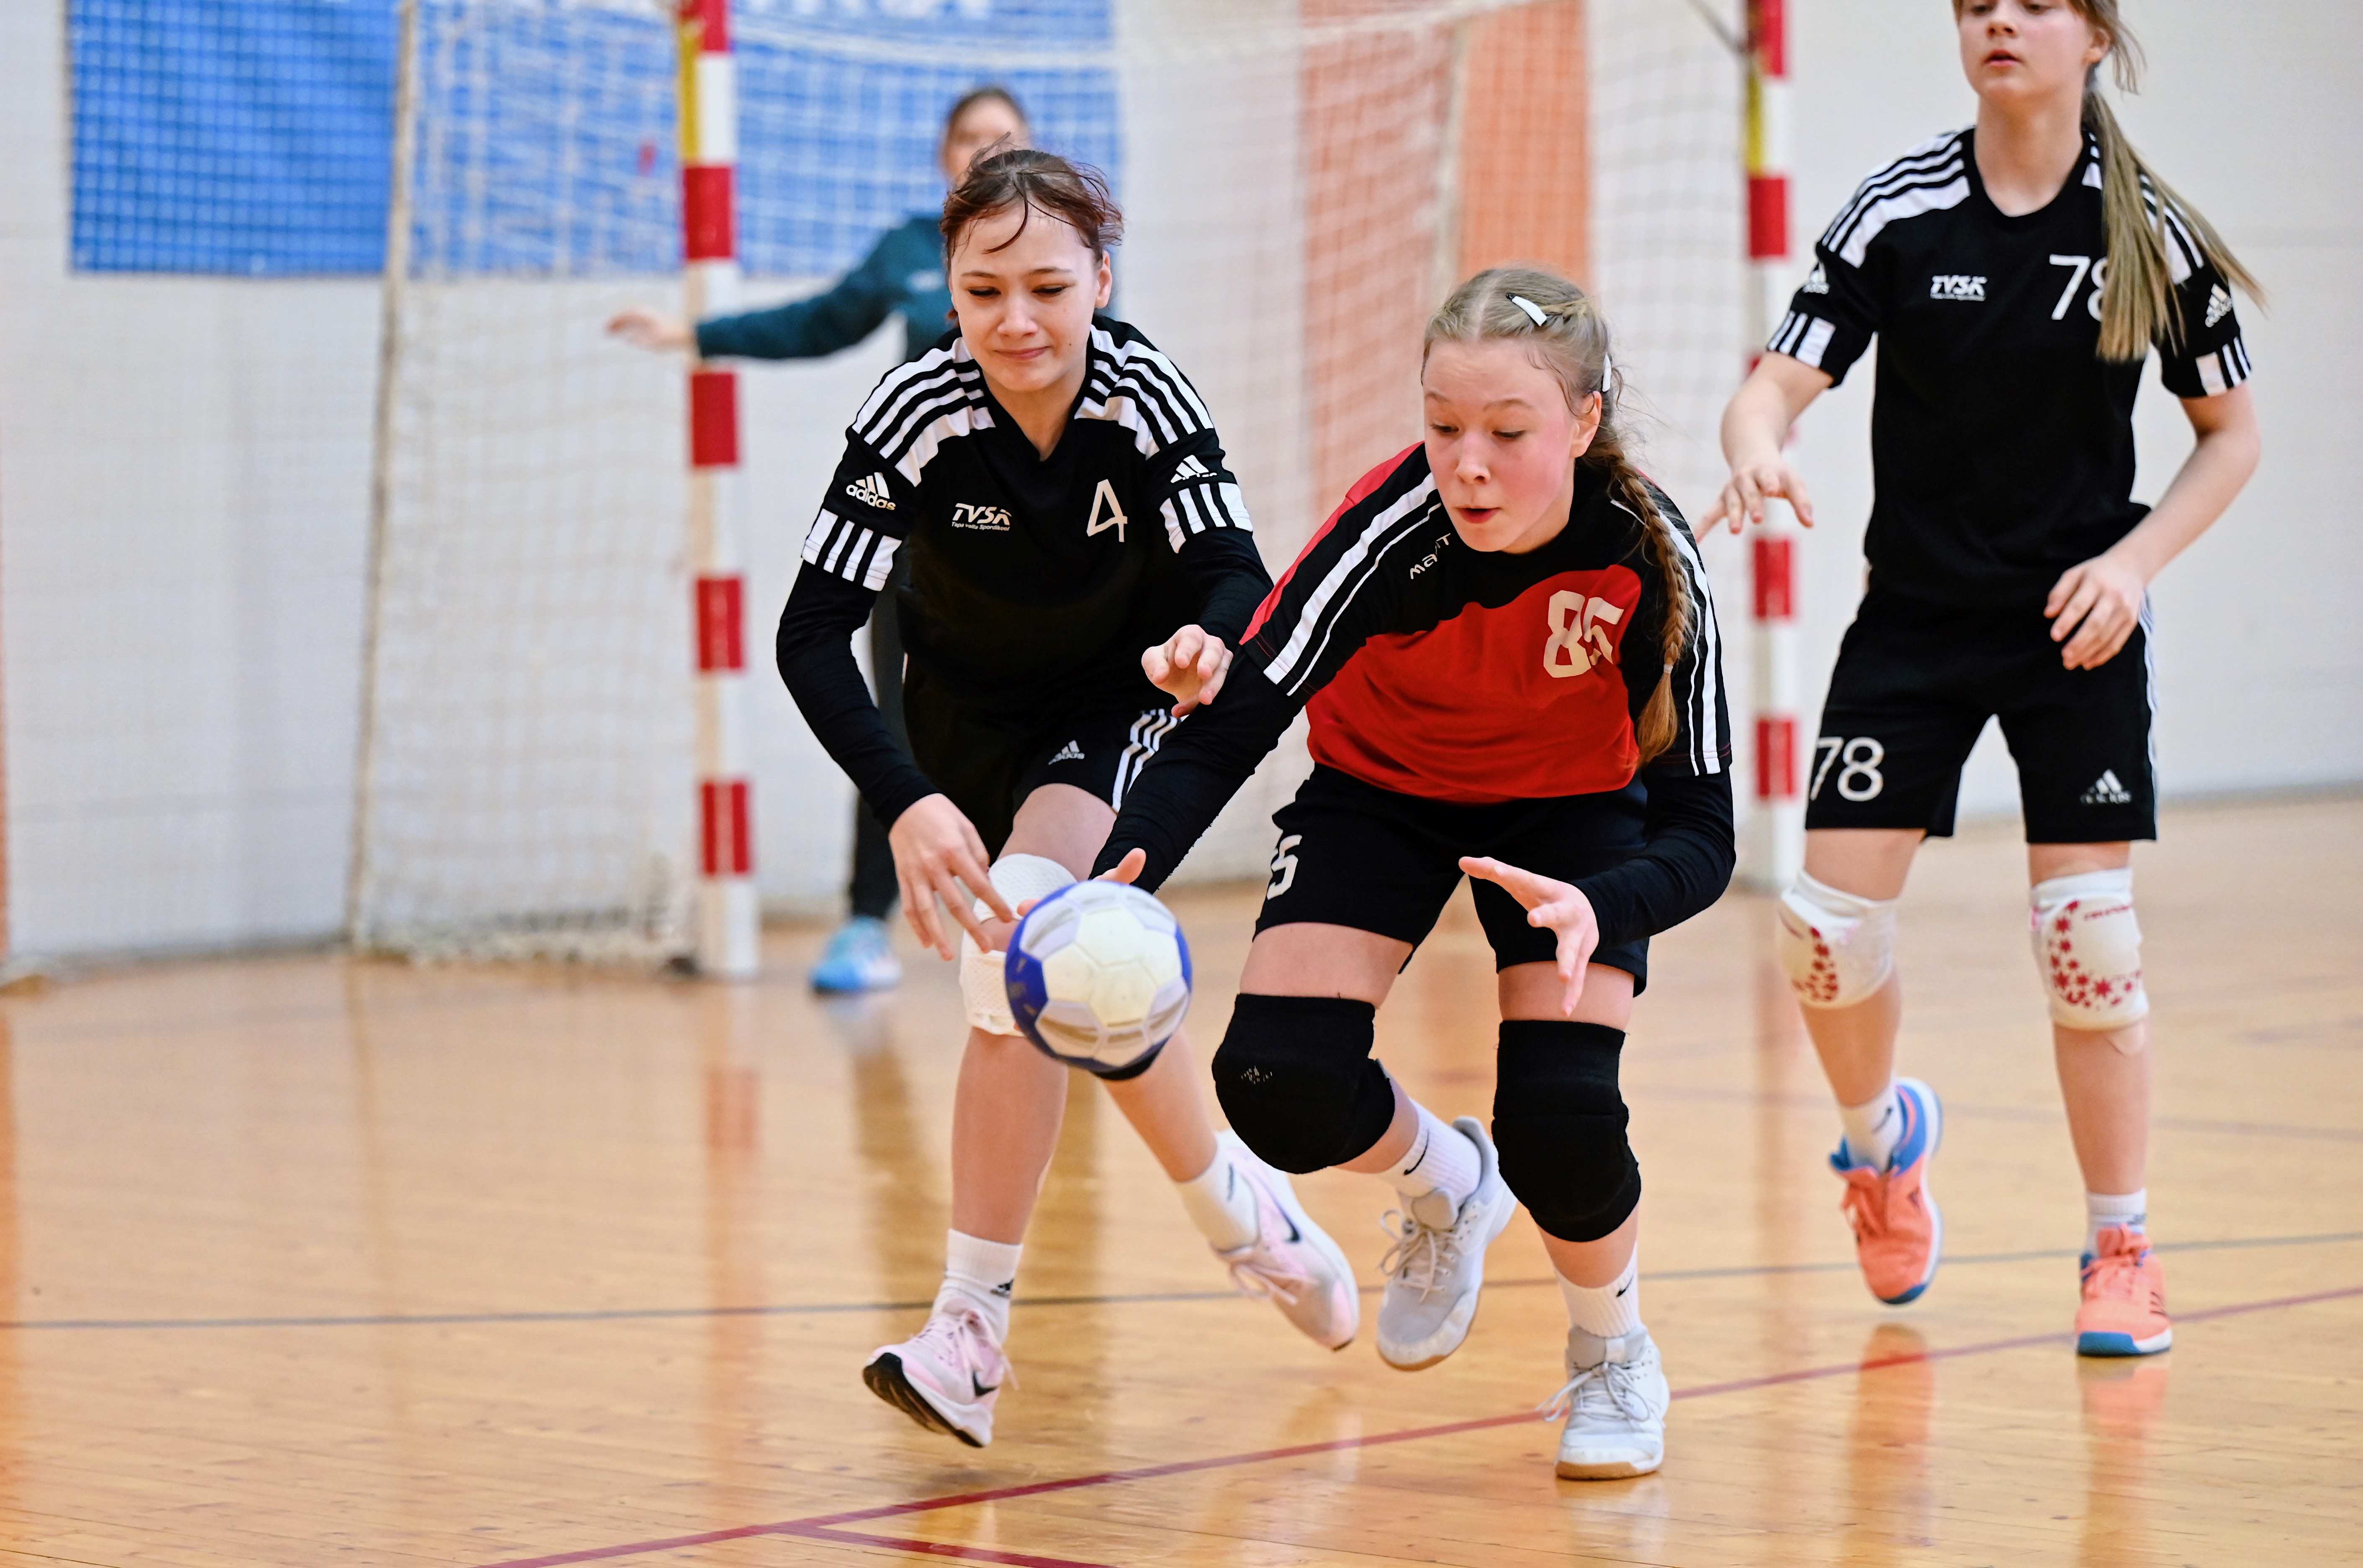 Nädalavahetusel selgub Tapal tütarlaste C2 vanuseklassi meister 2024 Eesti meistrivõistlustel käsipallis